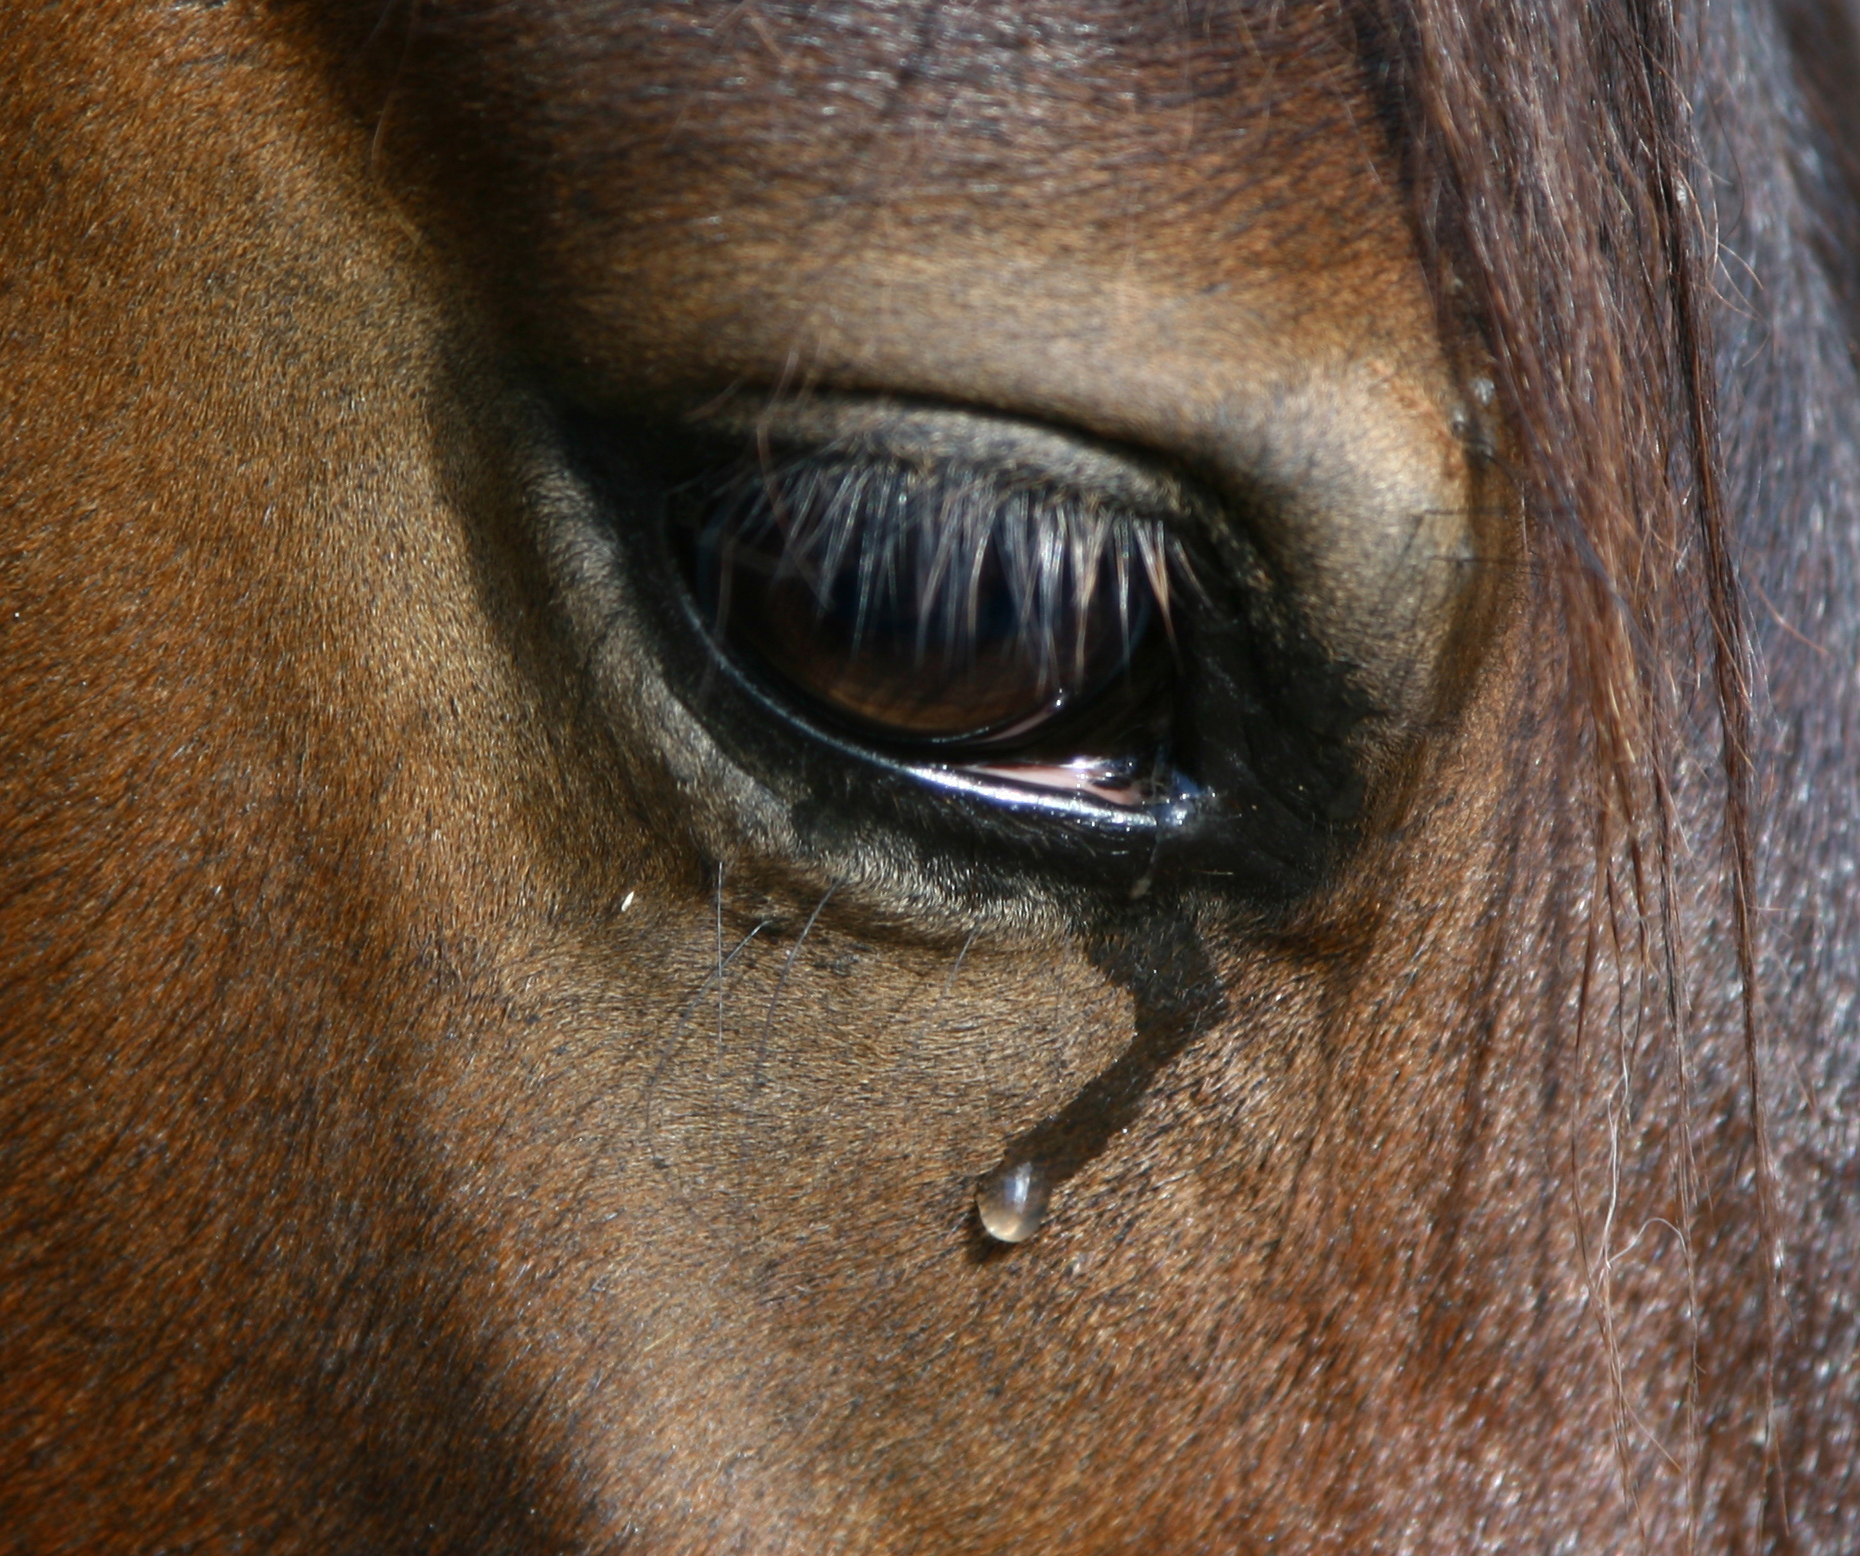 Allianz - Pferdekrankheiten: Tränendes Auge eines Pferdes.